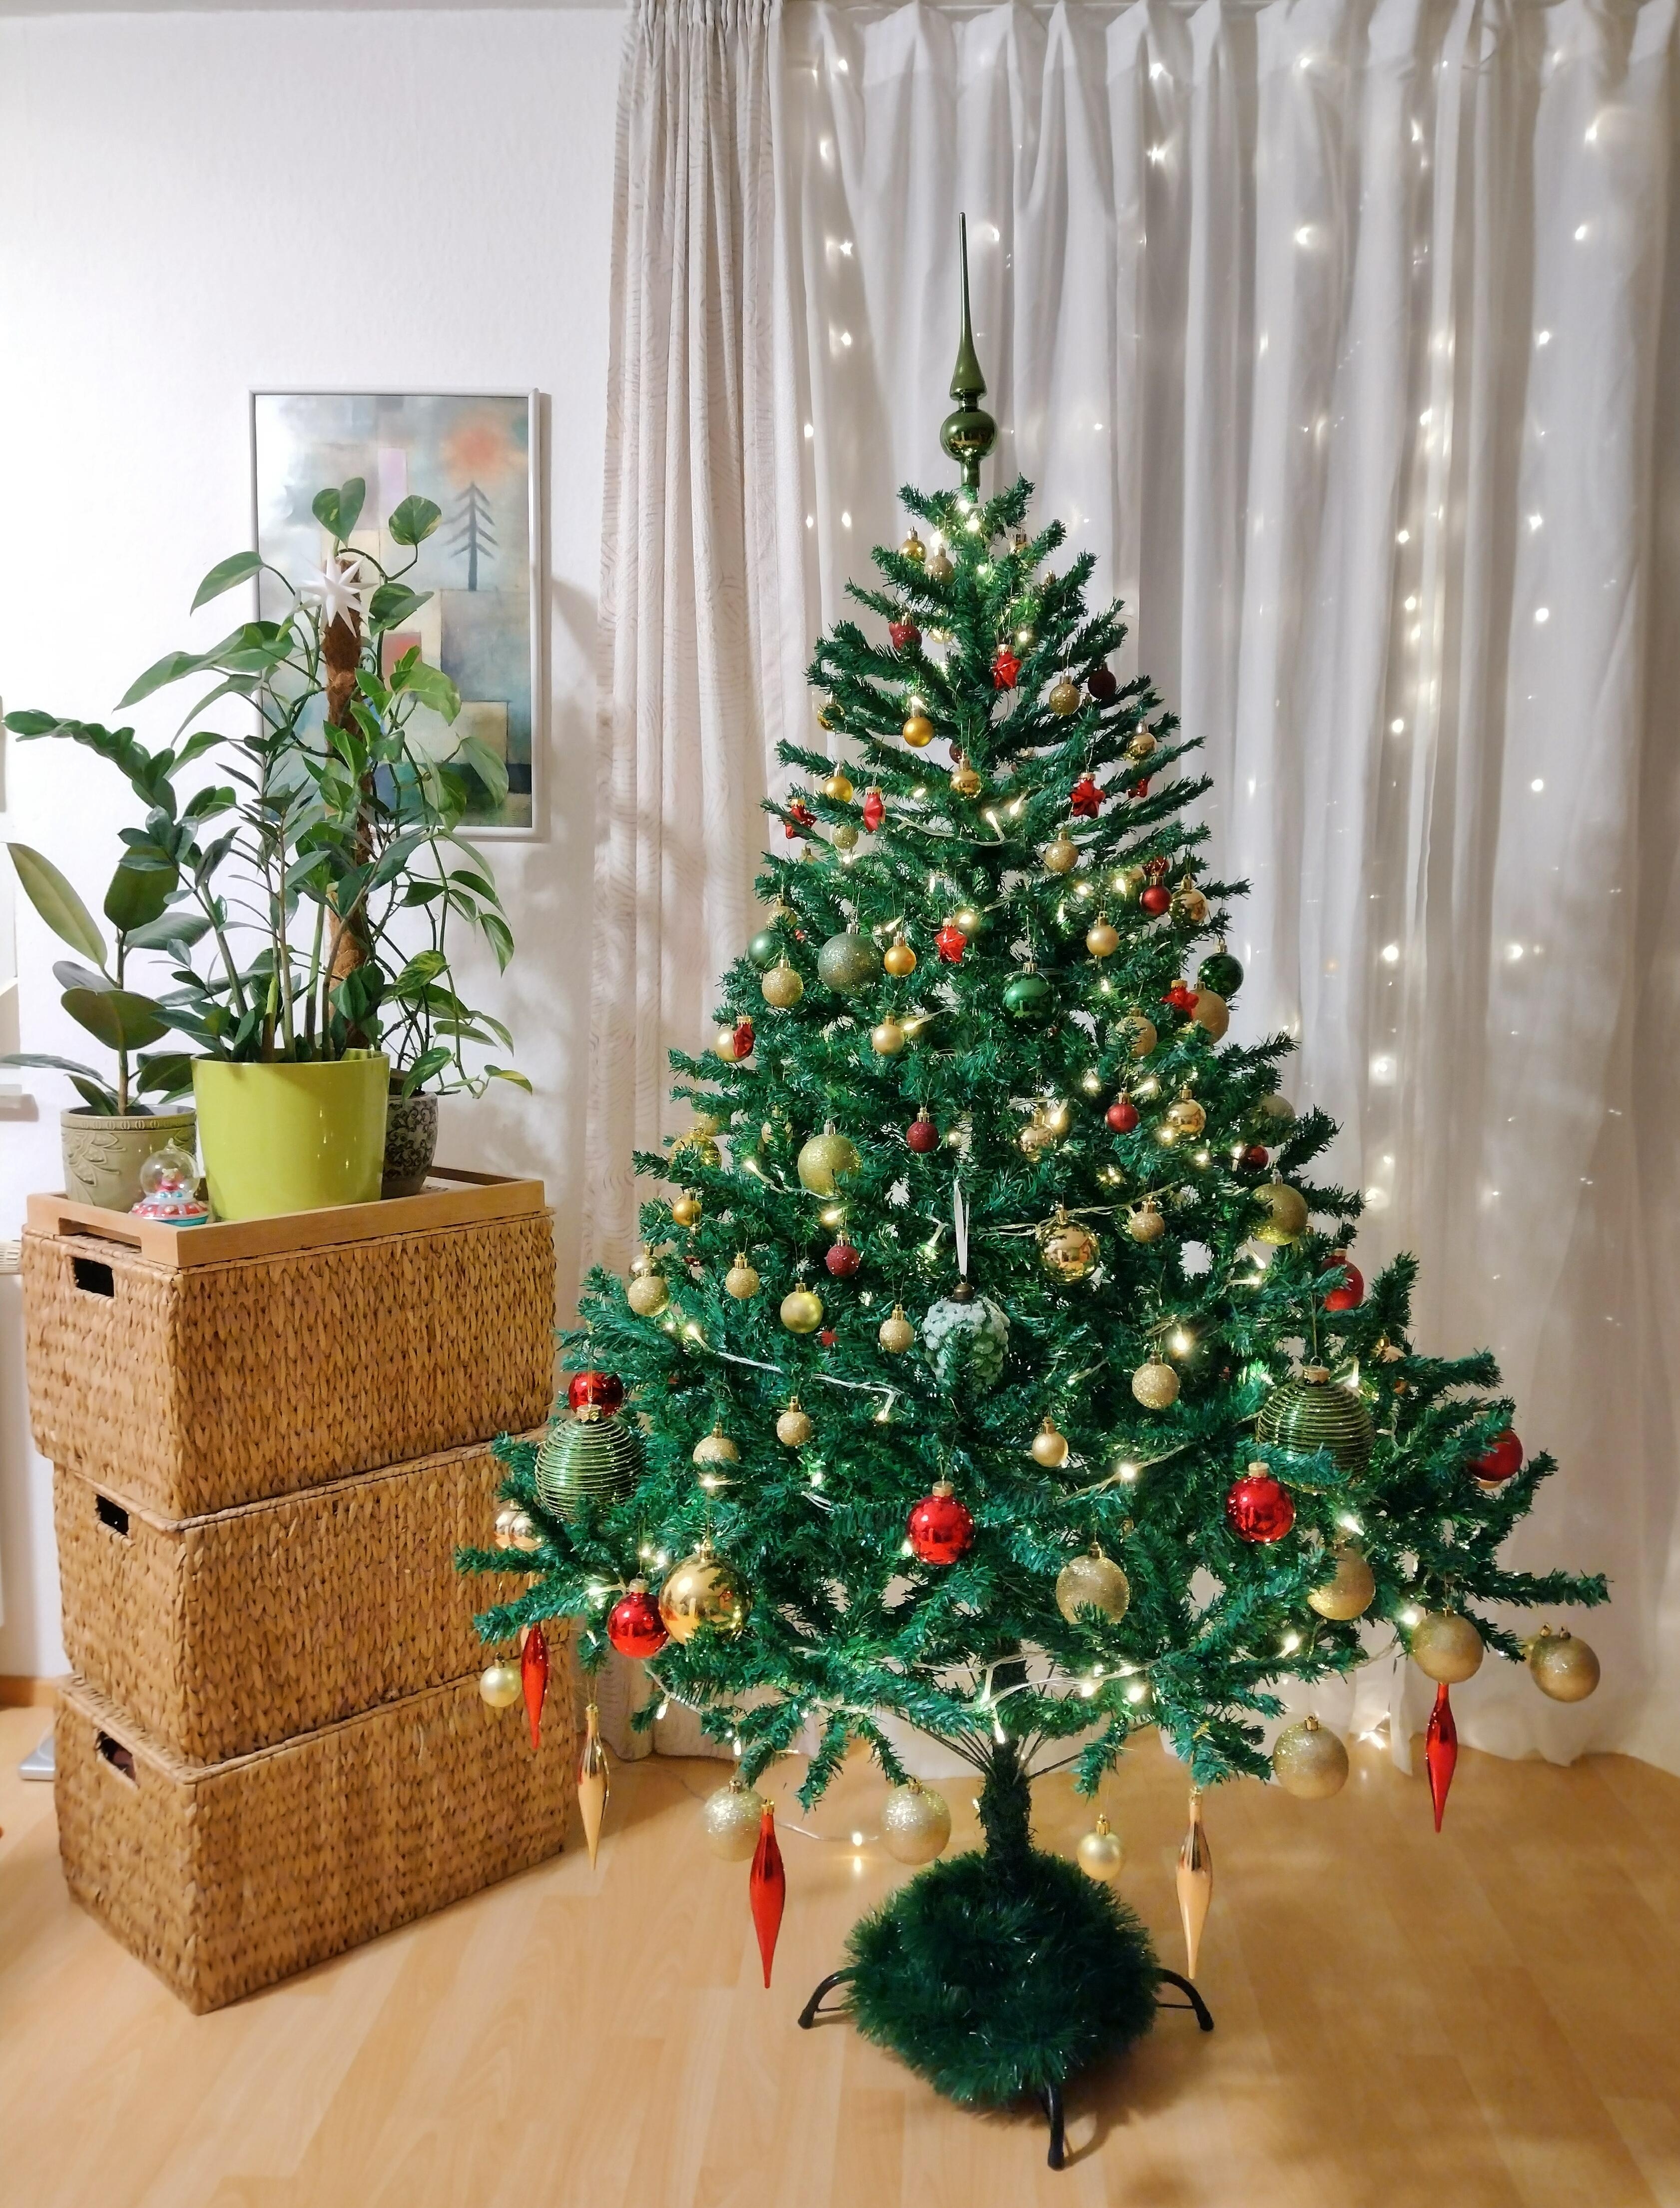 Der Baum steht, und er wurde endlich dekoriert 🎄
#weihnachtsbaum #wohnzimmer #tannenbaum #christbaum